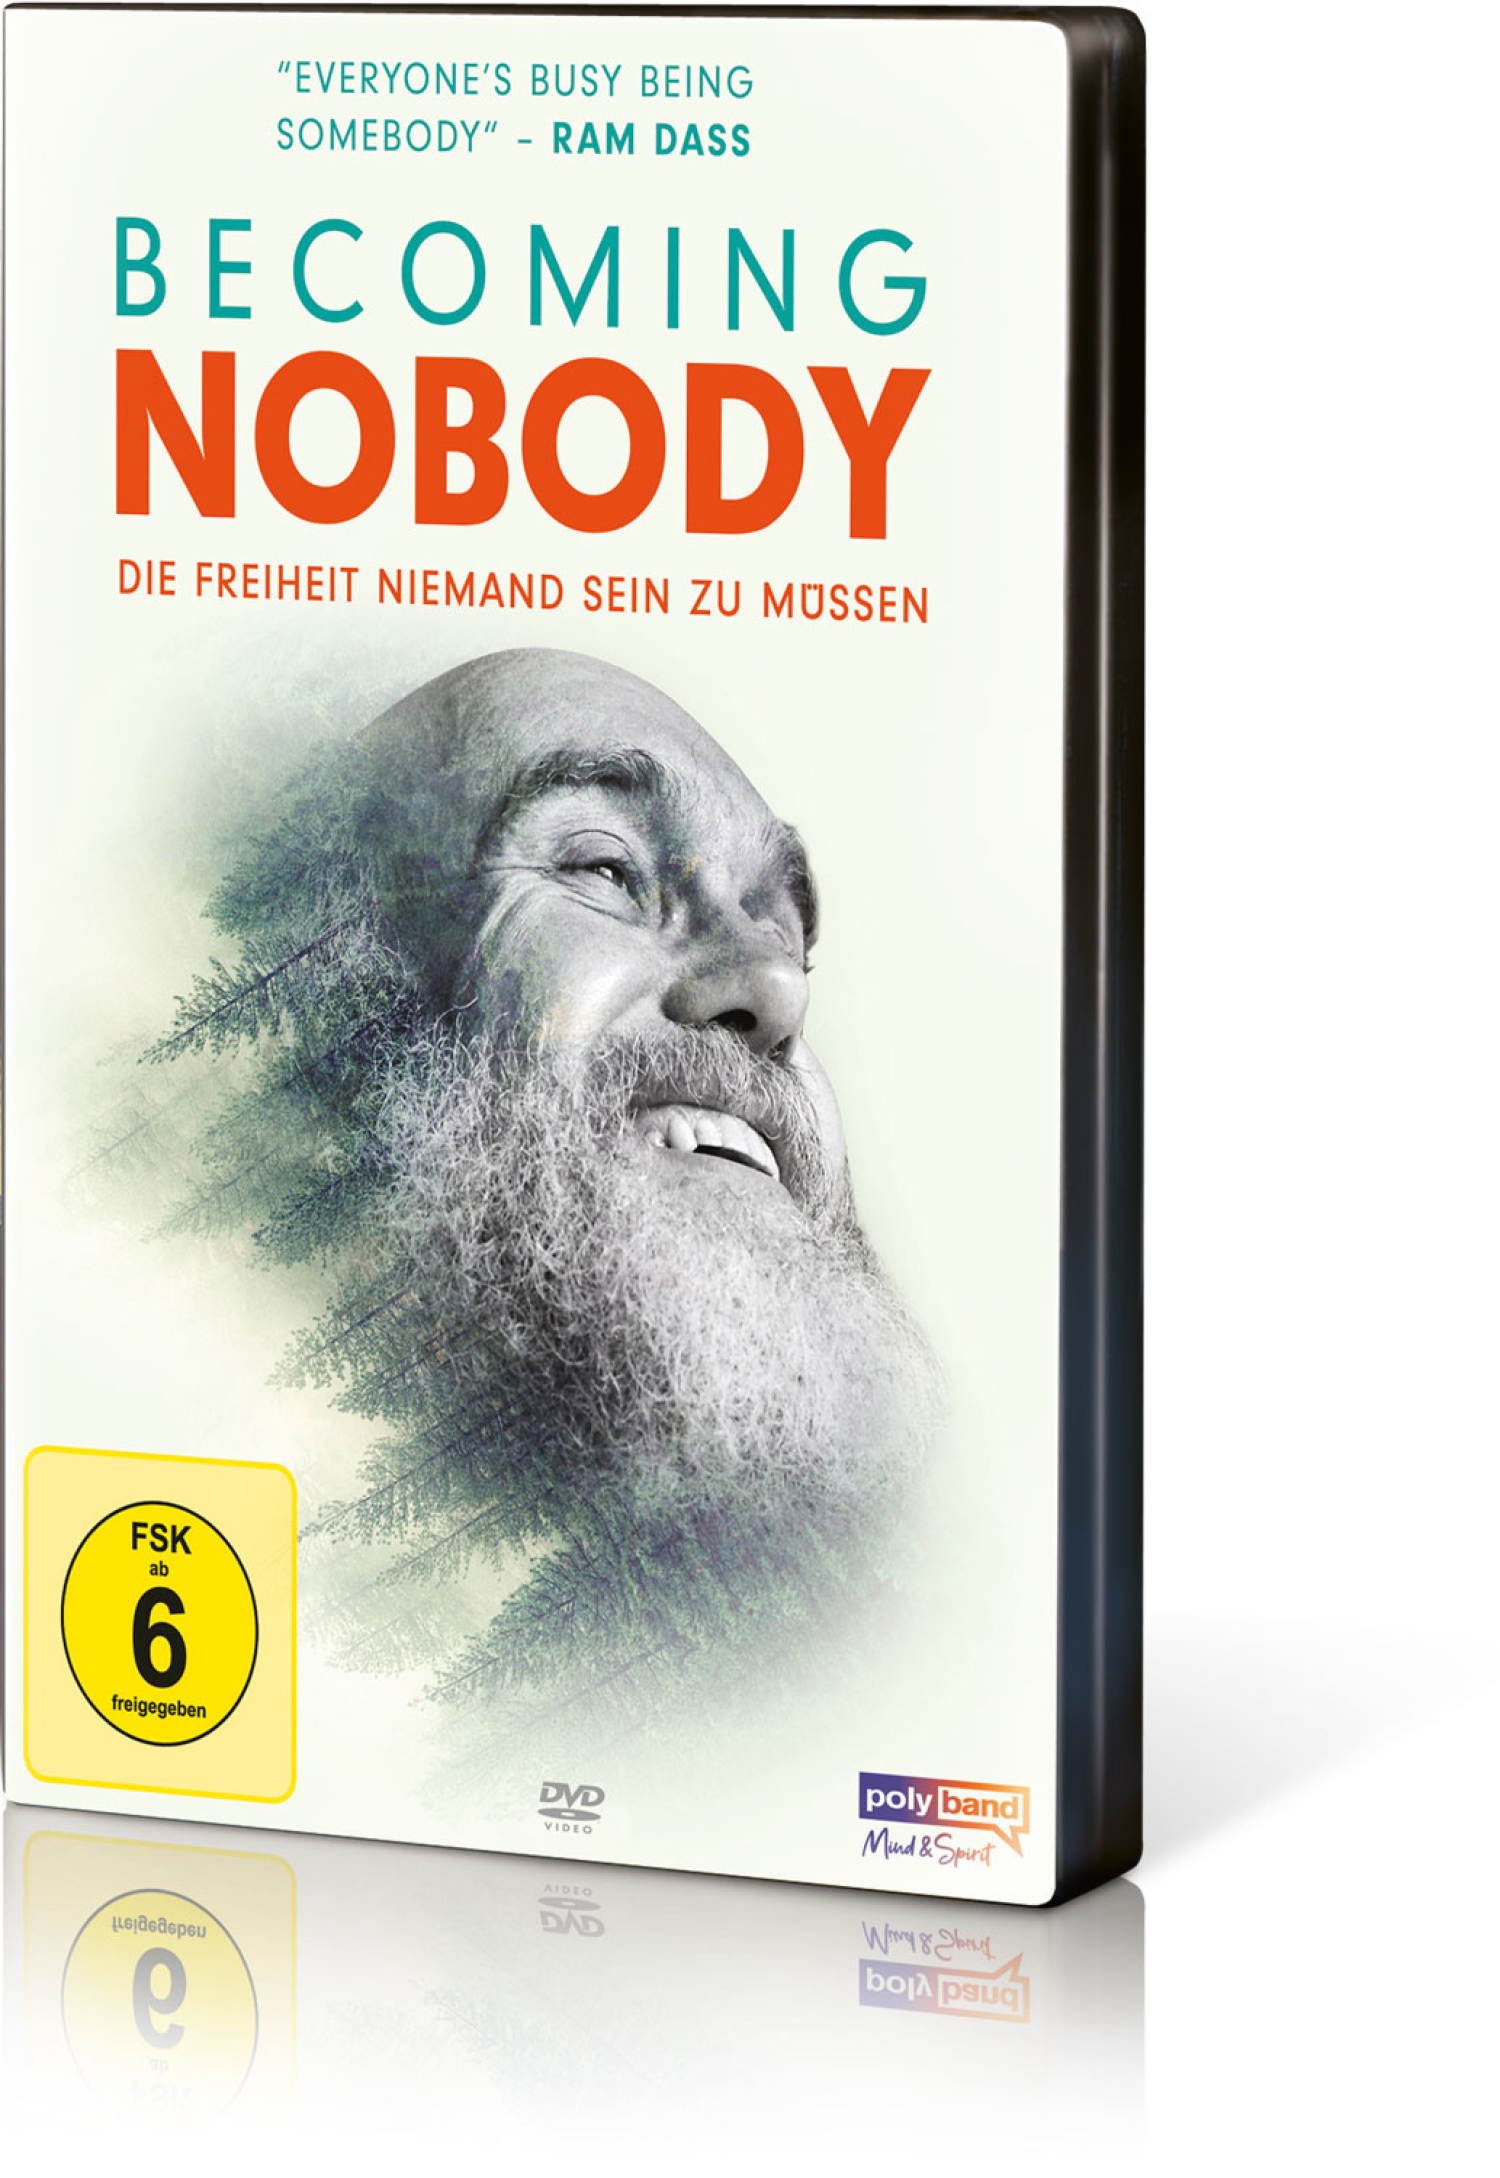 Becoming Nobody – Die Freiheit niemand sein zu müssen (DVD), Produktbild 1